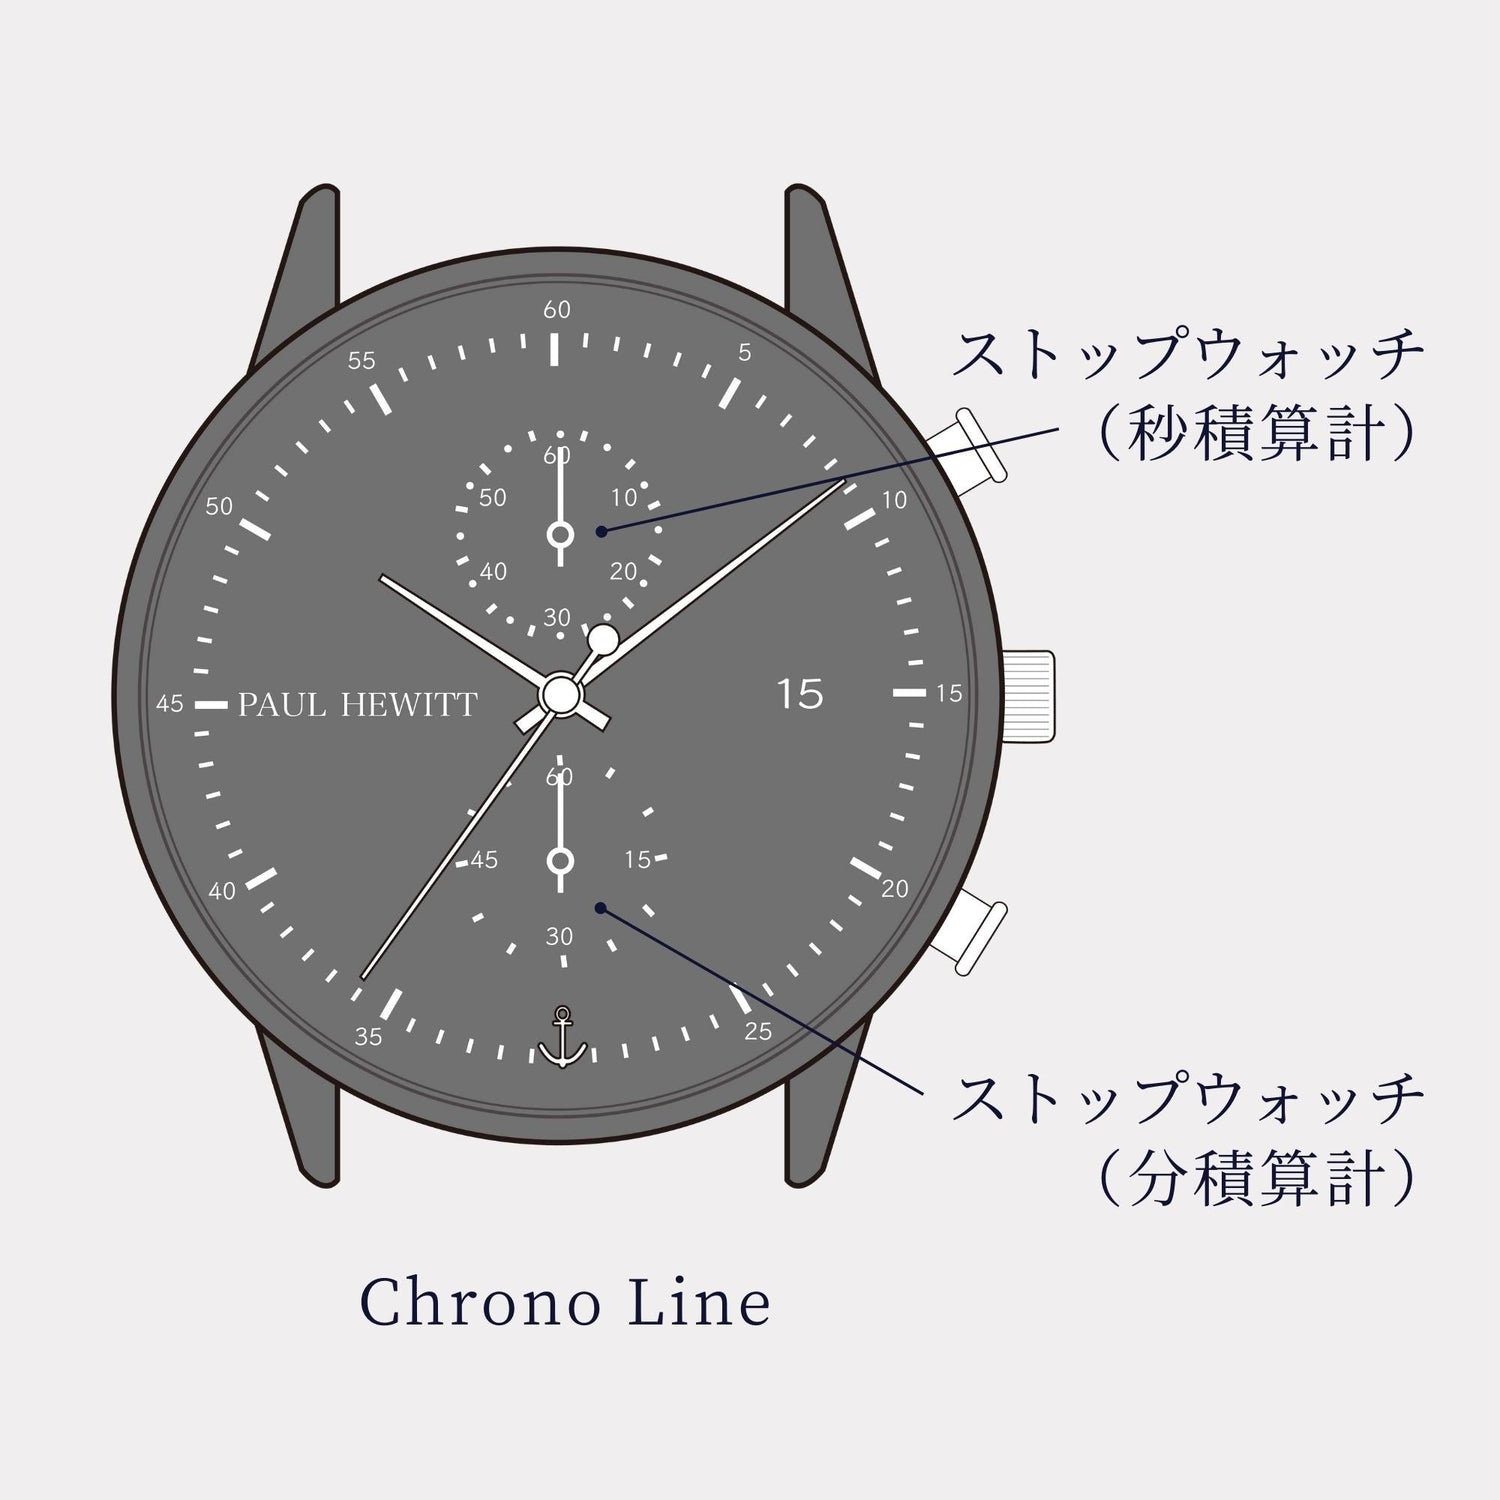 Chrono Line ブラックサンレイ/ローズゴールド ブラックメッシュ - ポールヒューイット日本公式サイト